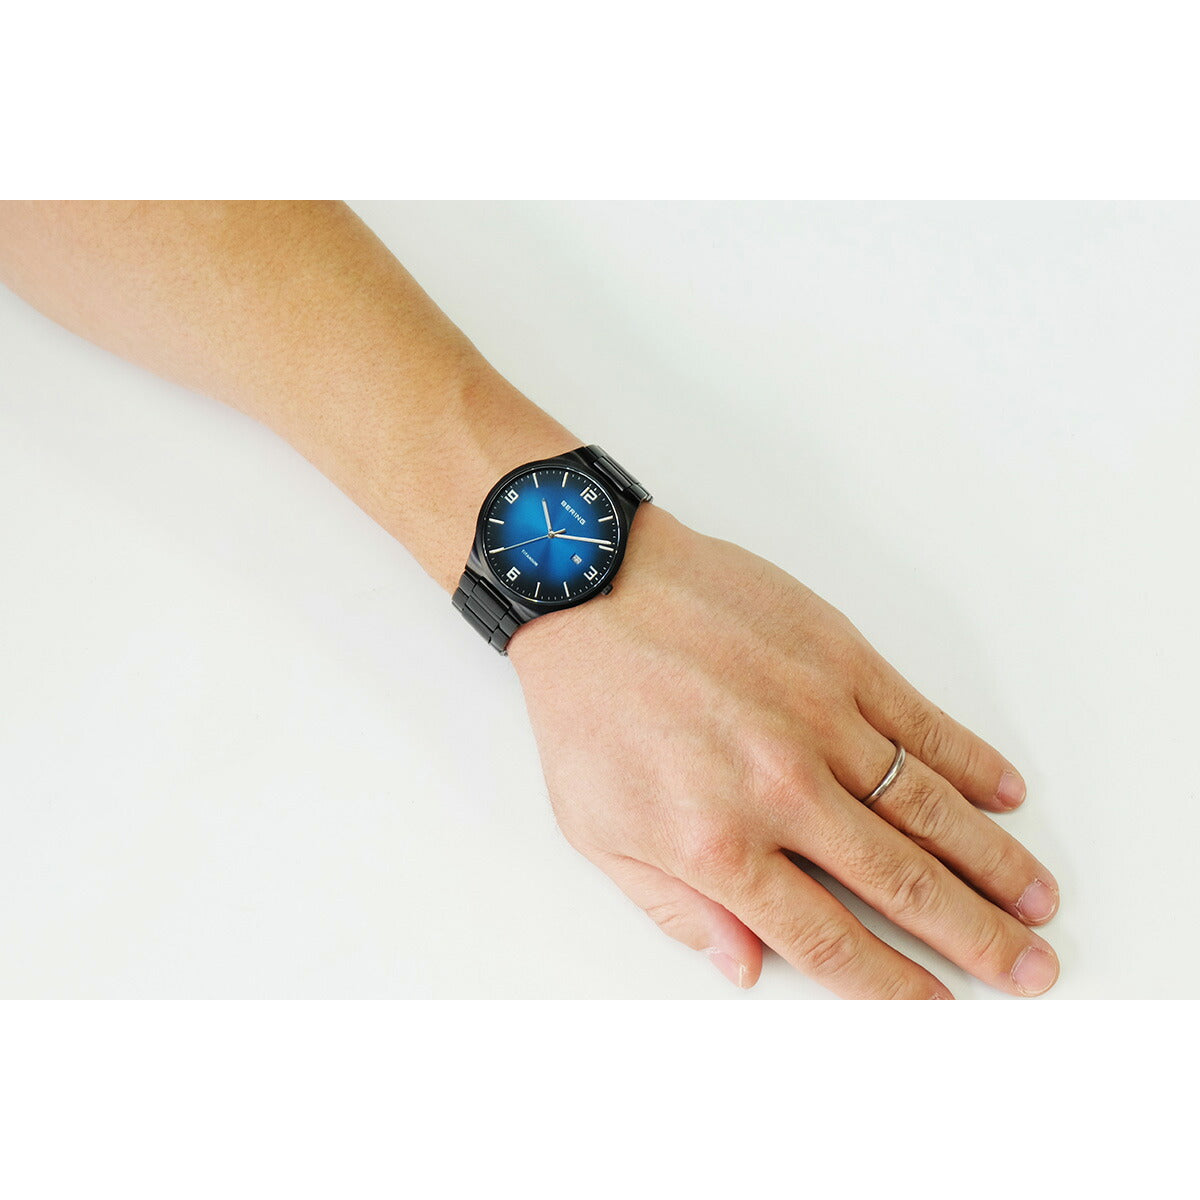 ベーリング BERING 腕時計 メンズ チタニウム TITANIUM チタン 15240-727